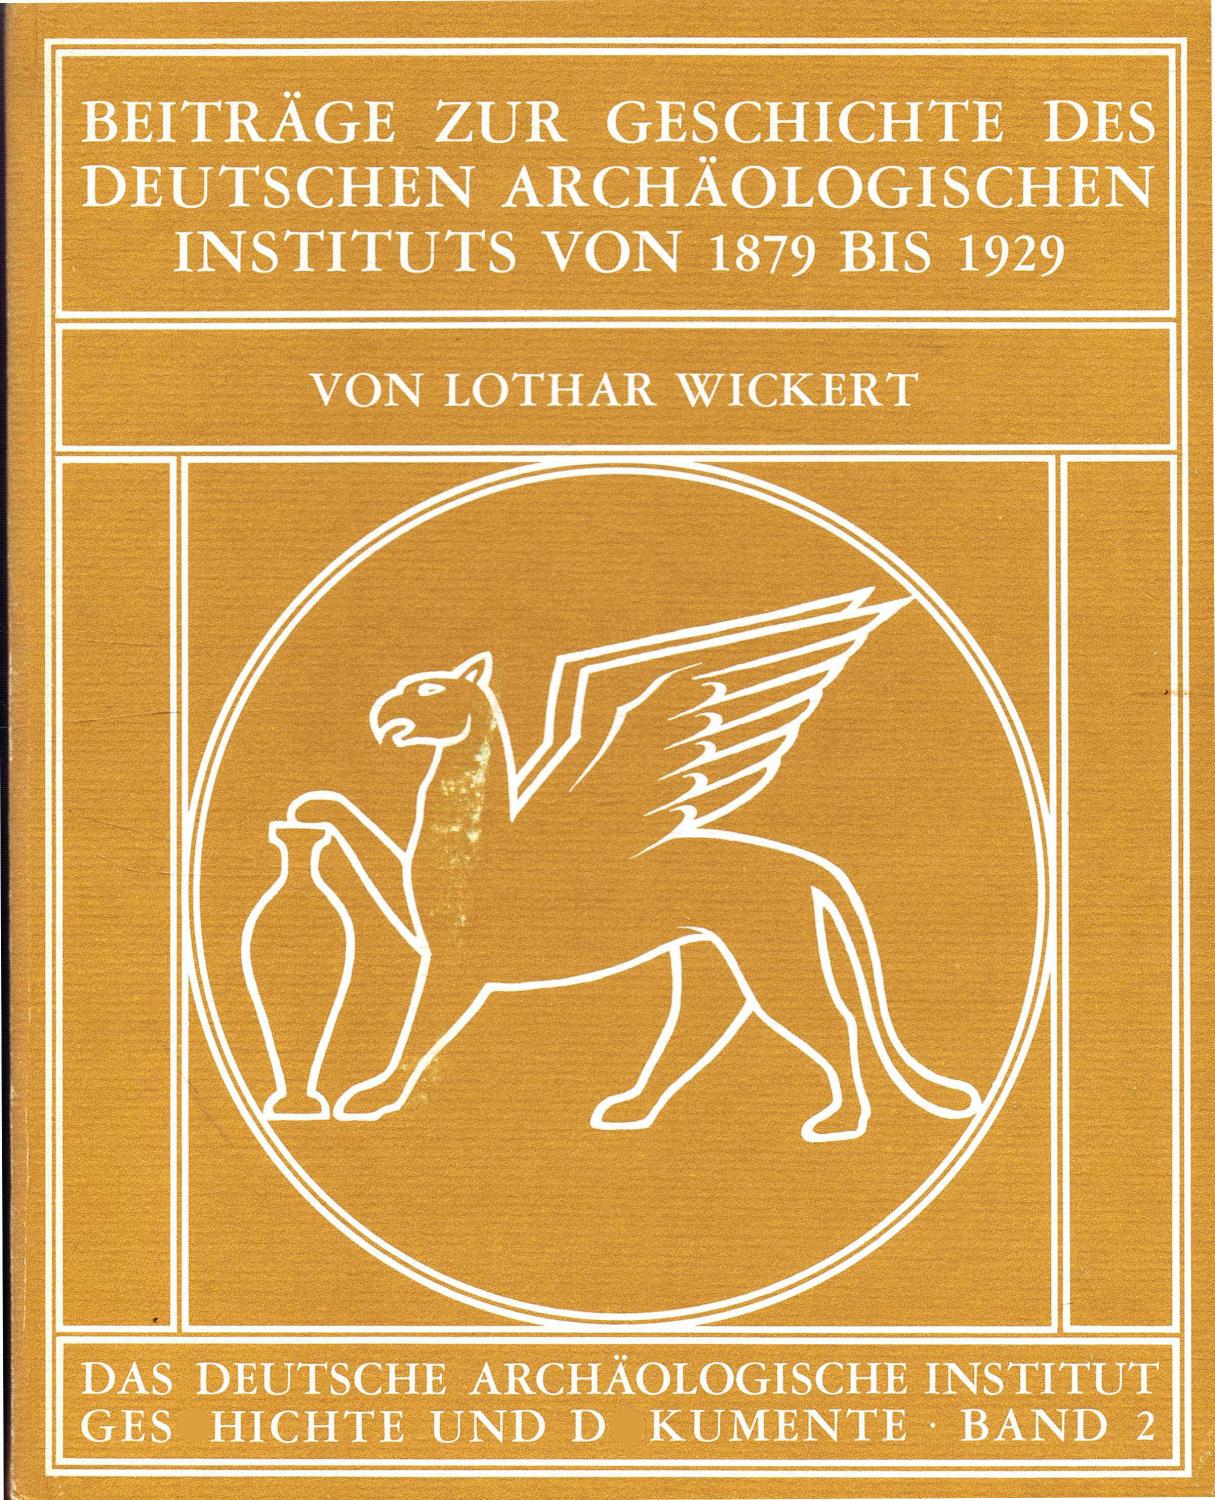 Beiträge zur Geschichte des Deutschen Archäologischen Instituts 1879 bis 1929 (1979) - Wickert, Lothar